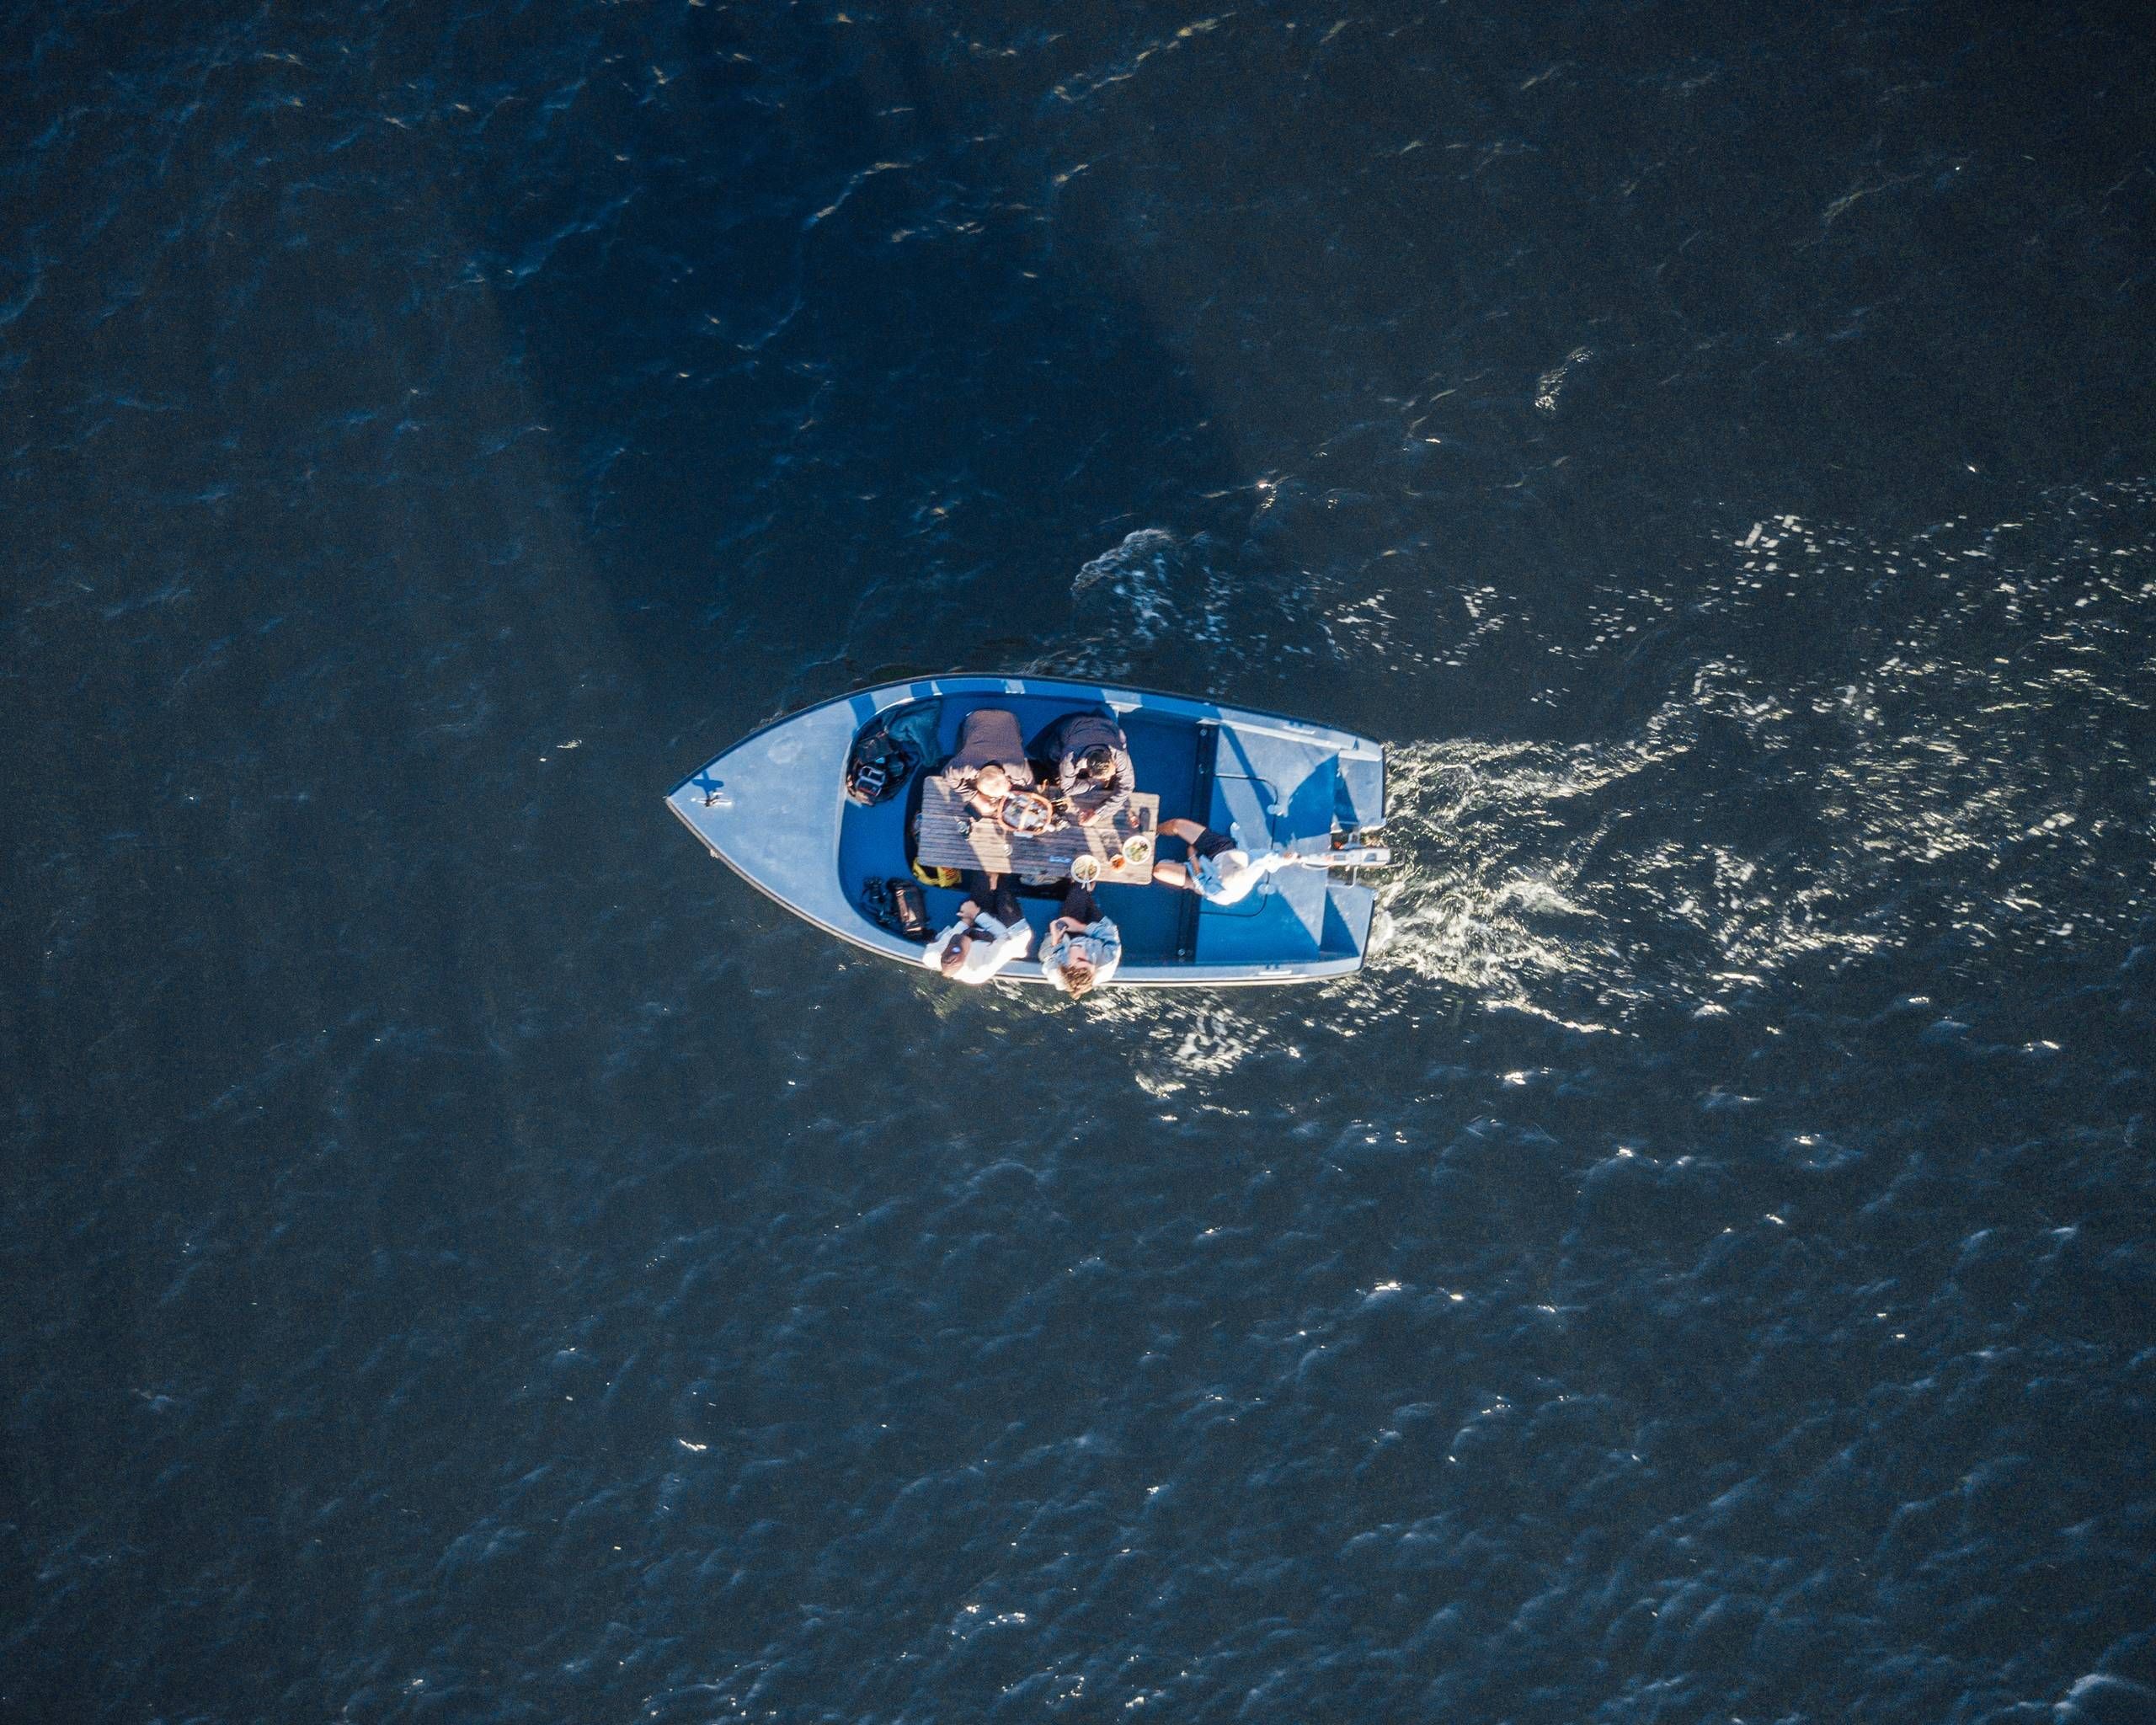 GoBoat søsætter blå både i Aarhus Havn